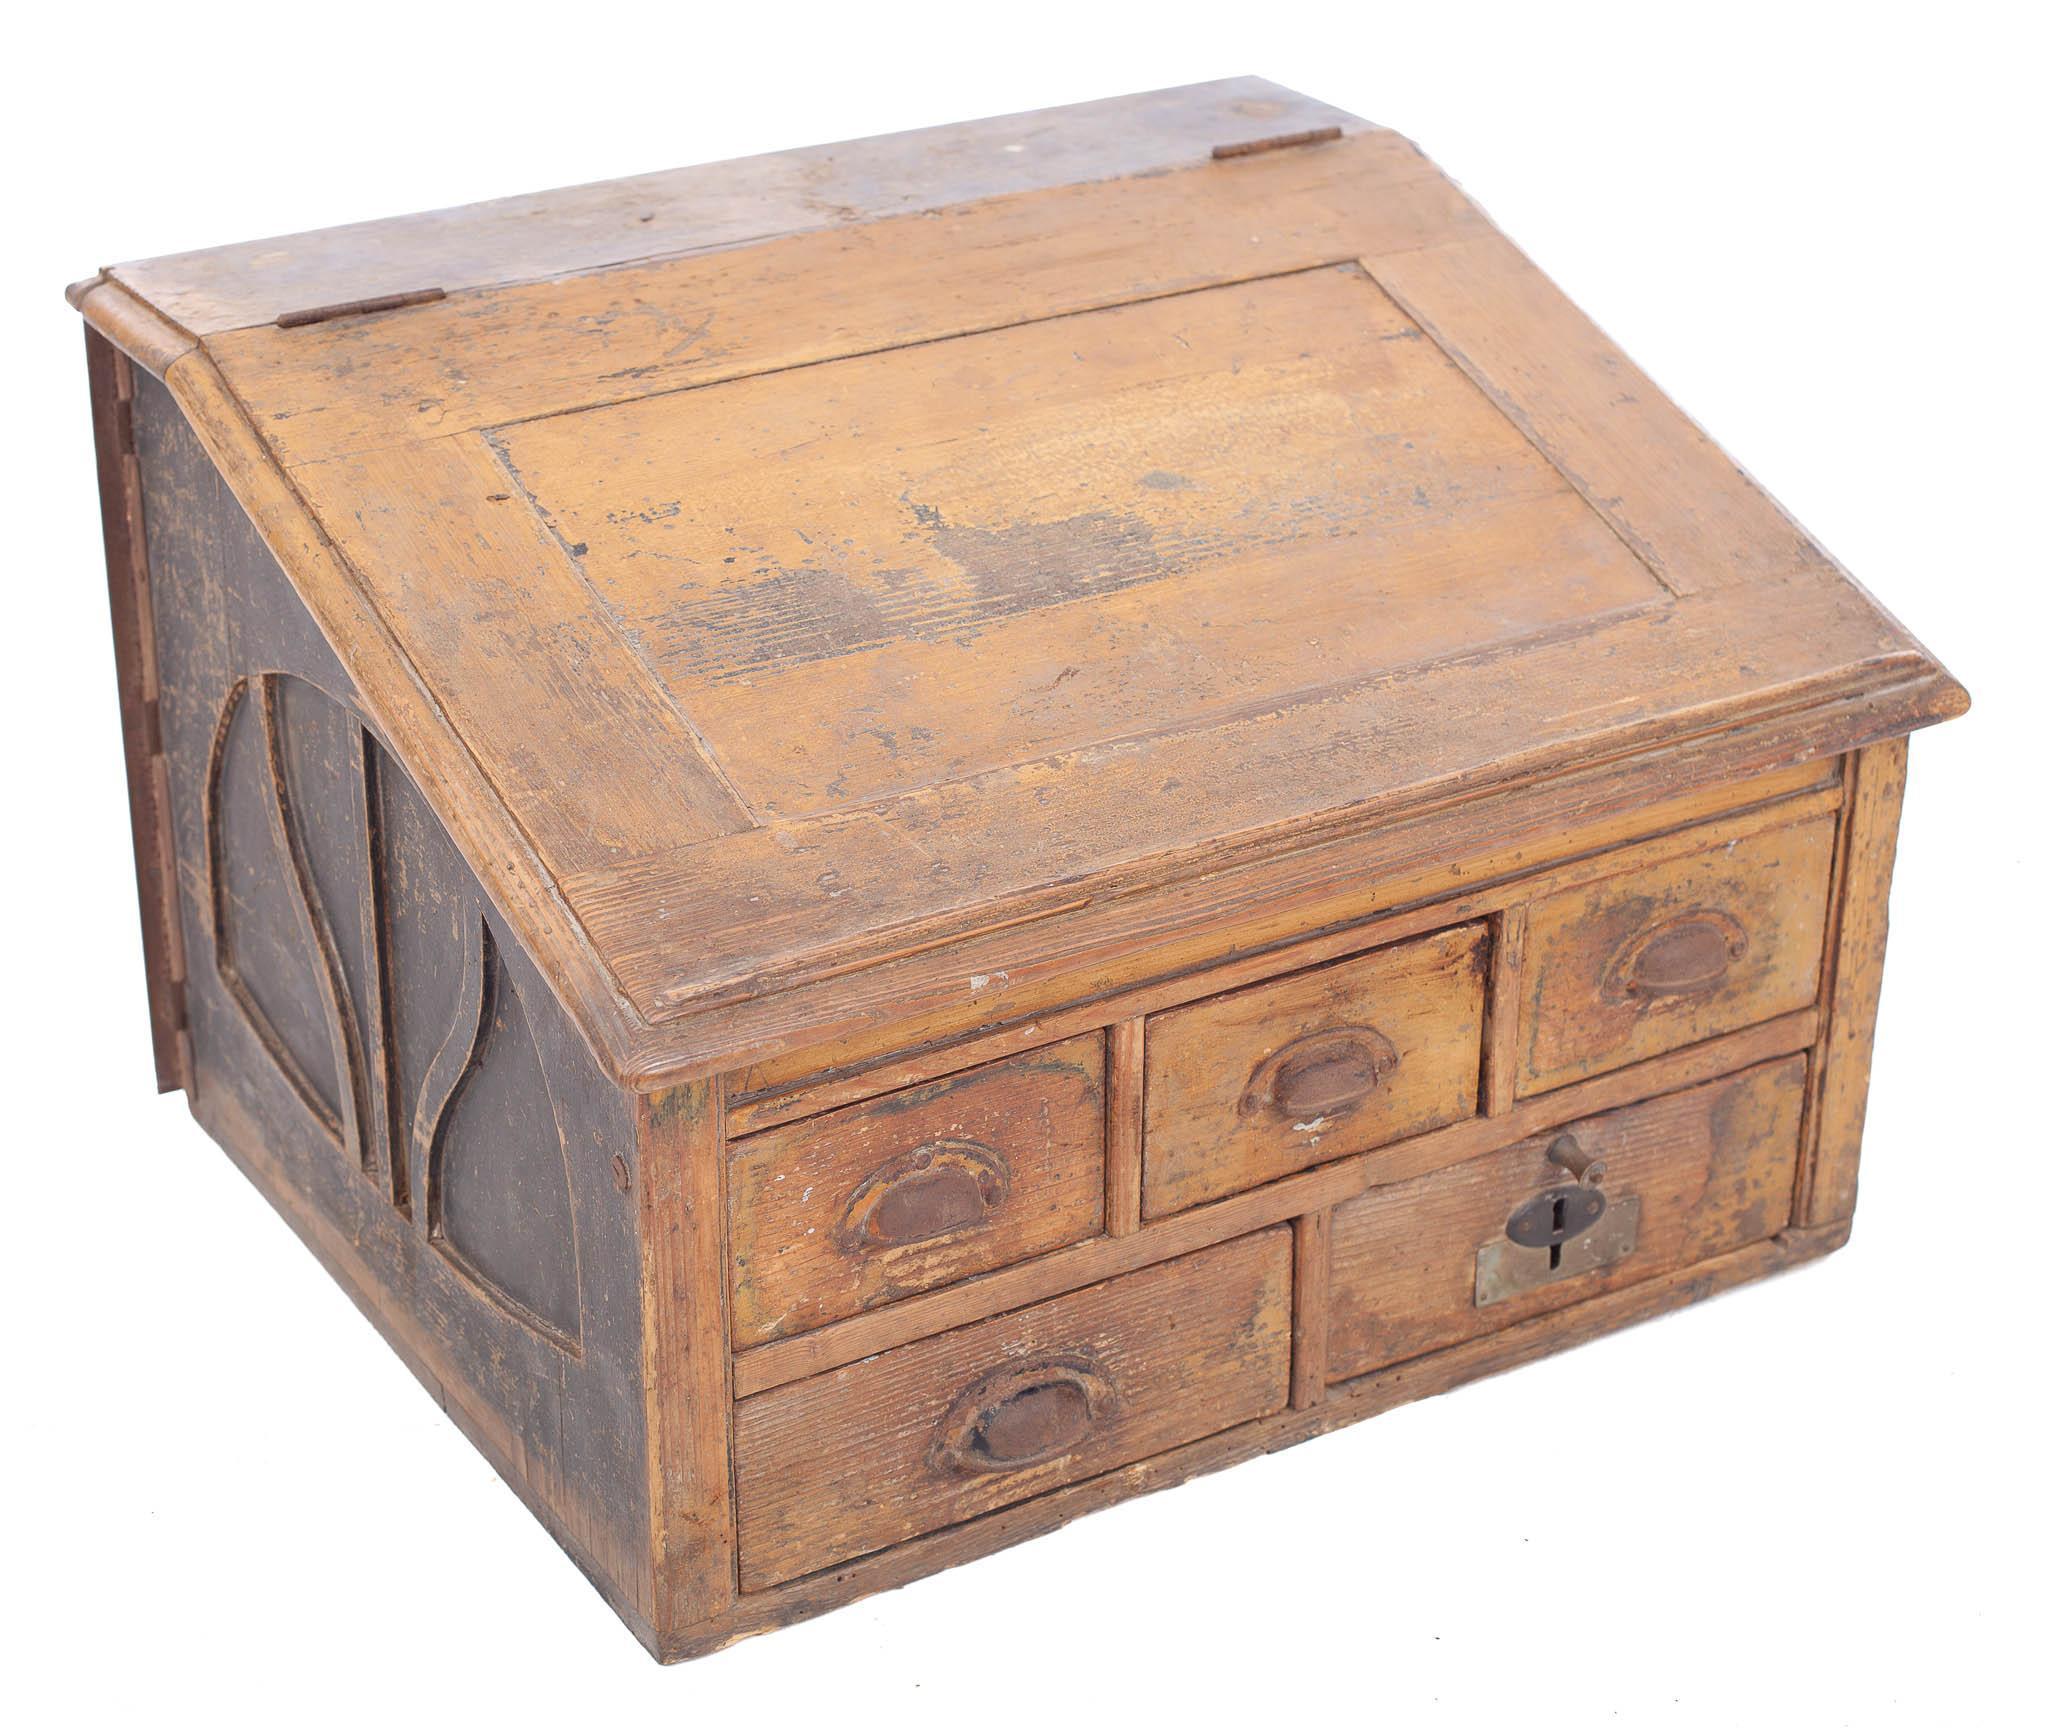 Sold at Auction: Antique Primitive Large Flat Basket Circa 1850